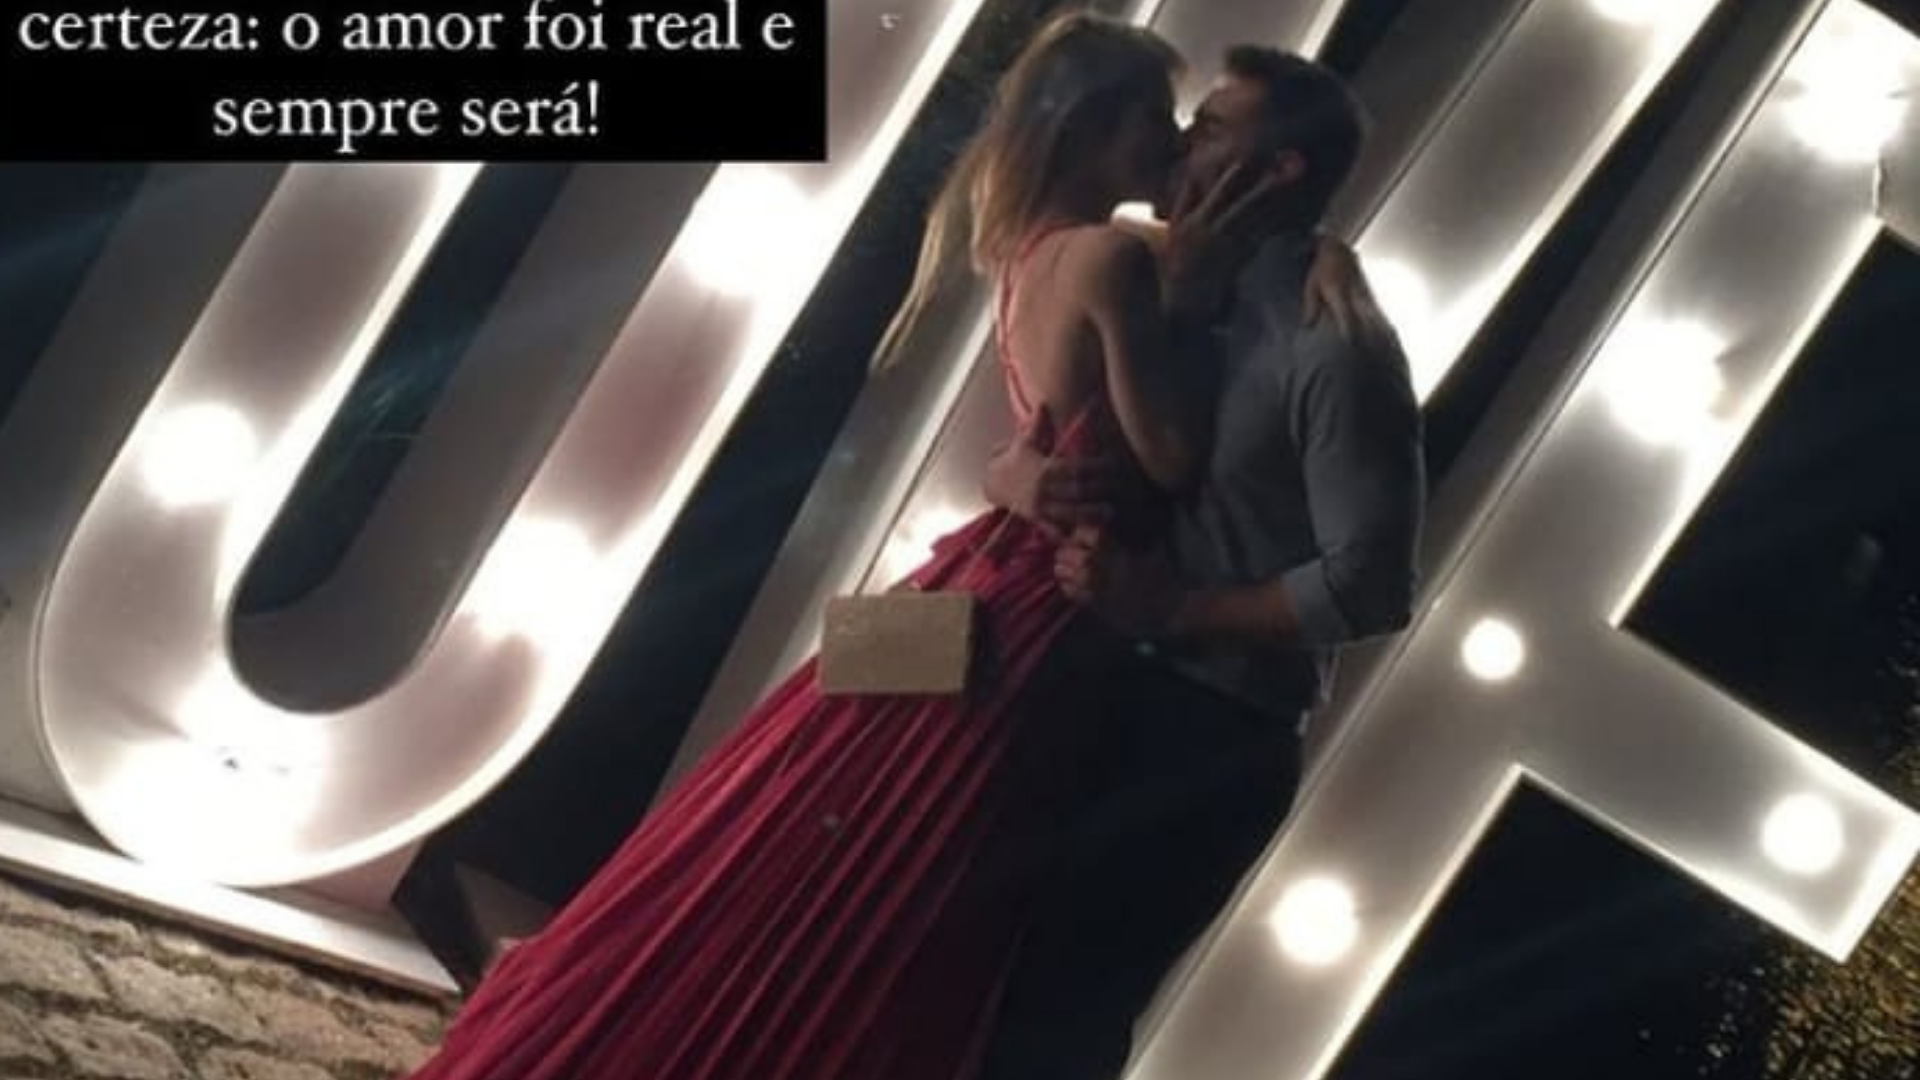 Namoro de Mamãe Falei chega ao fim após áudios sobre ucranianas. Ele aparece beijando a namorada em uma foto no Instagram.